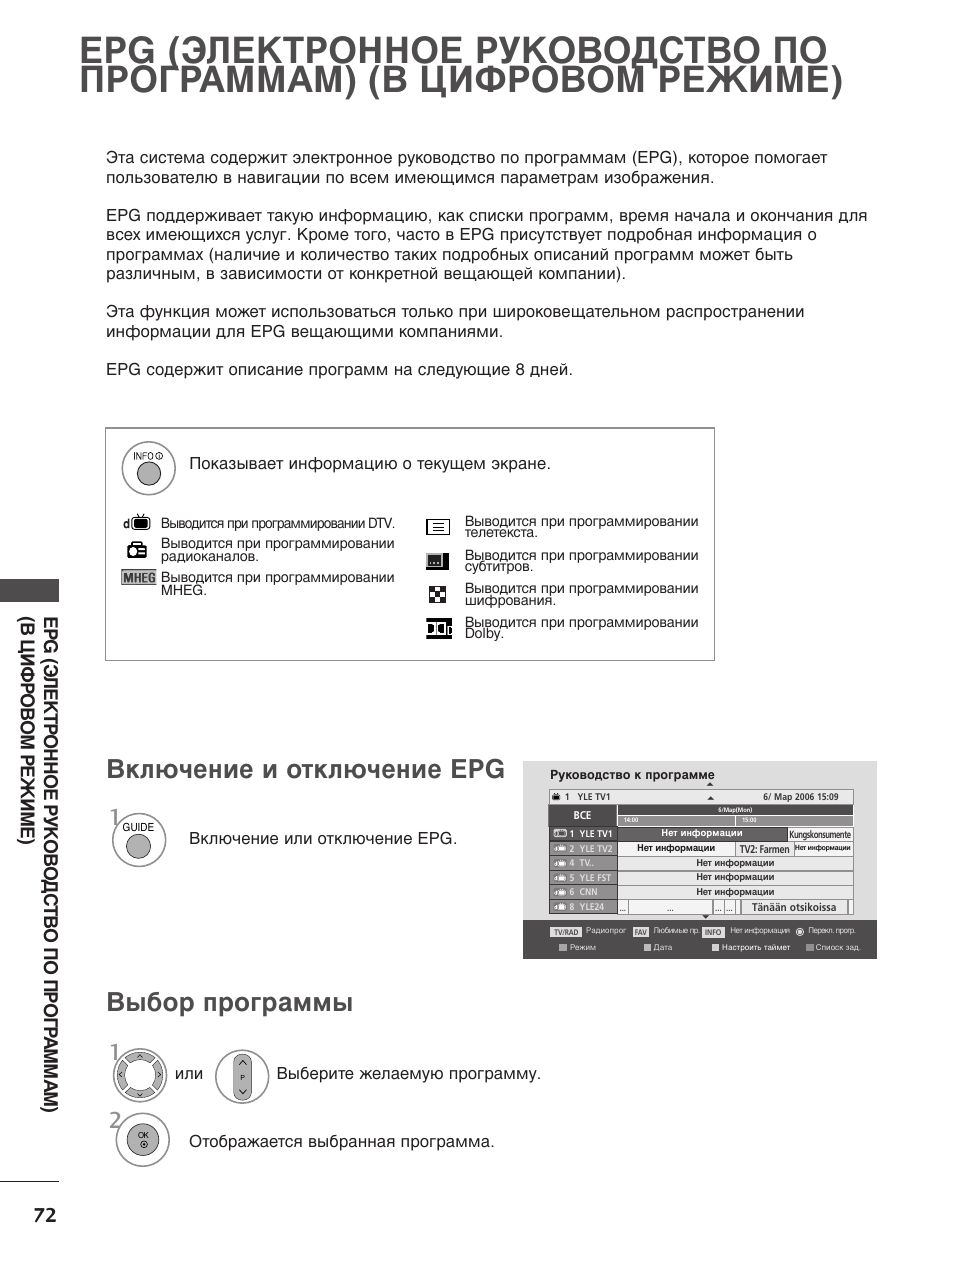 О 5 s о, Включение и отключение epg, Выбор программы | Го ss | Инструкция по эксплуатации LG 42LG7000 | Страница 74 / 134